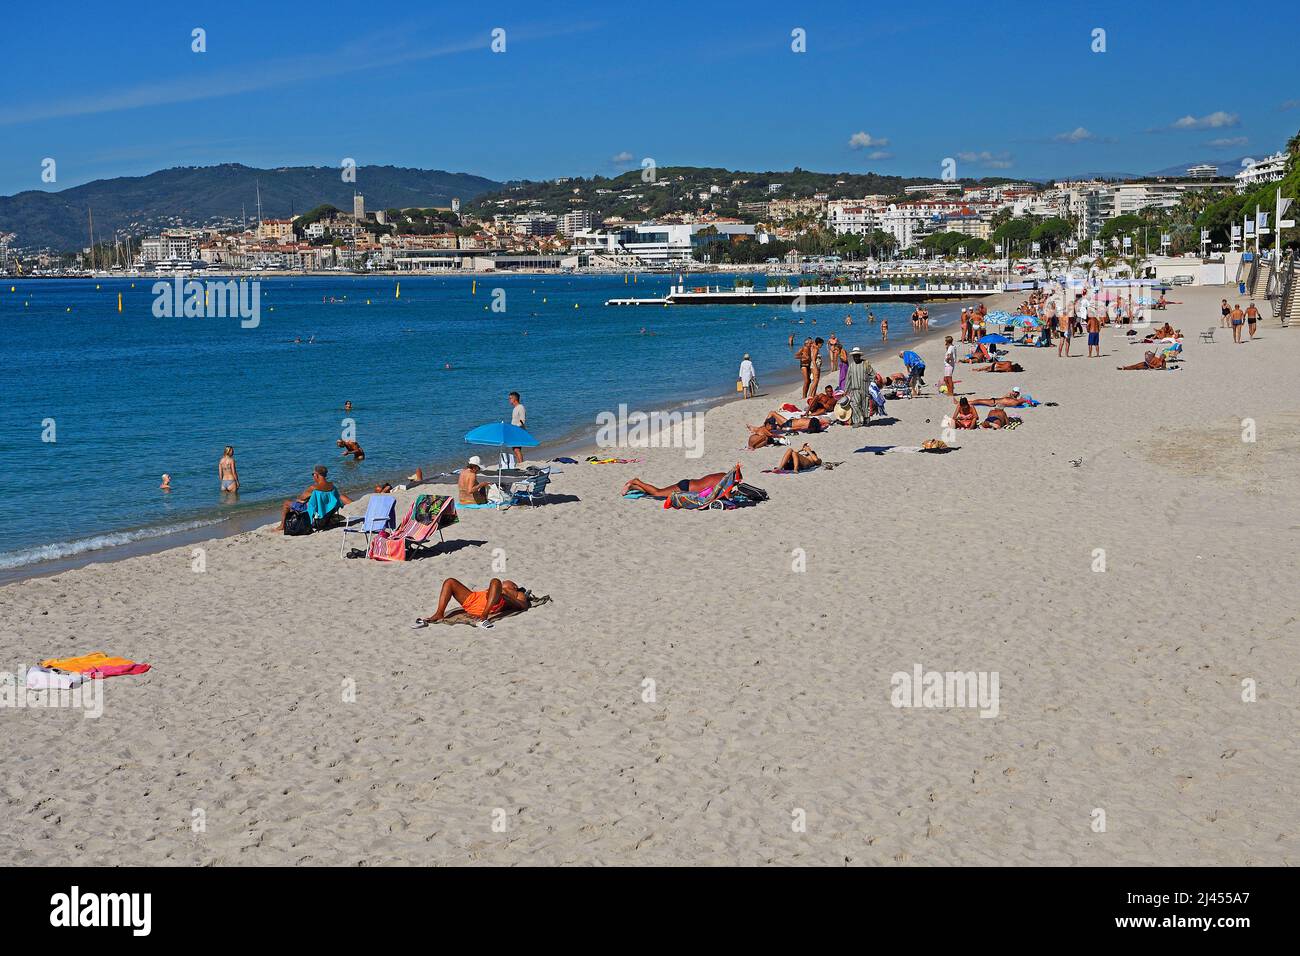 Strand und Bucht von Cannes, Côte d’Azur, Provence-Alpes-Côte d’Azur, Südfrankreich, Frankreich Banque D'Images